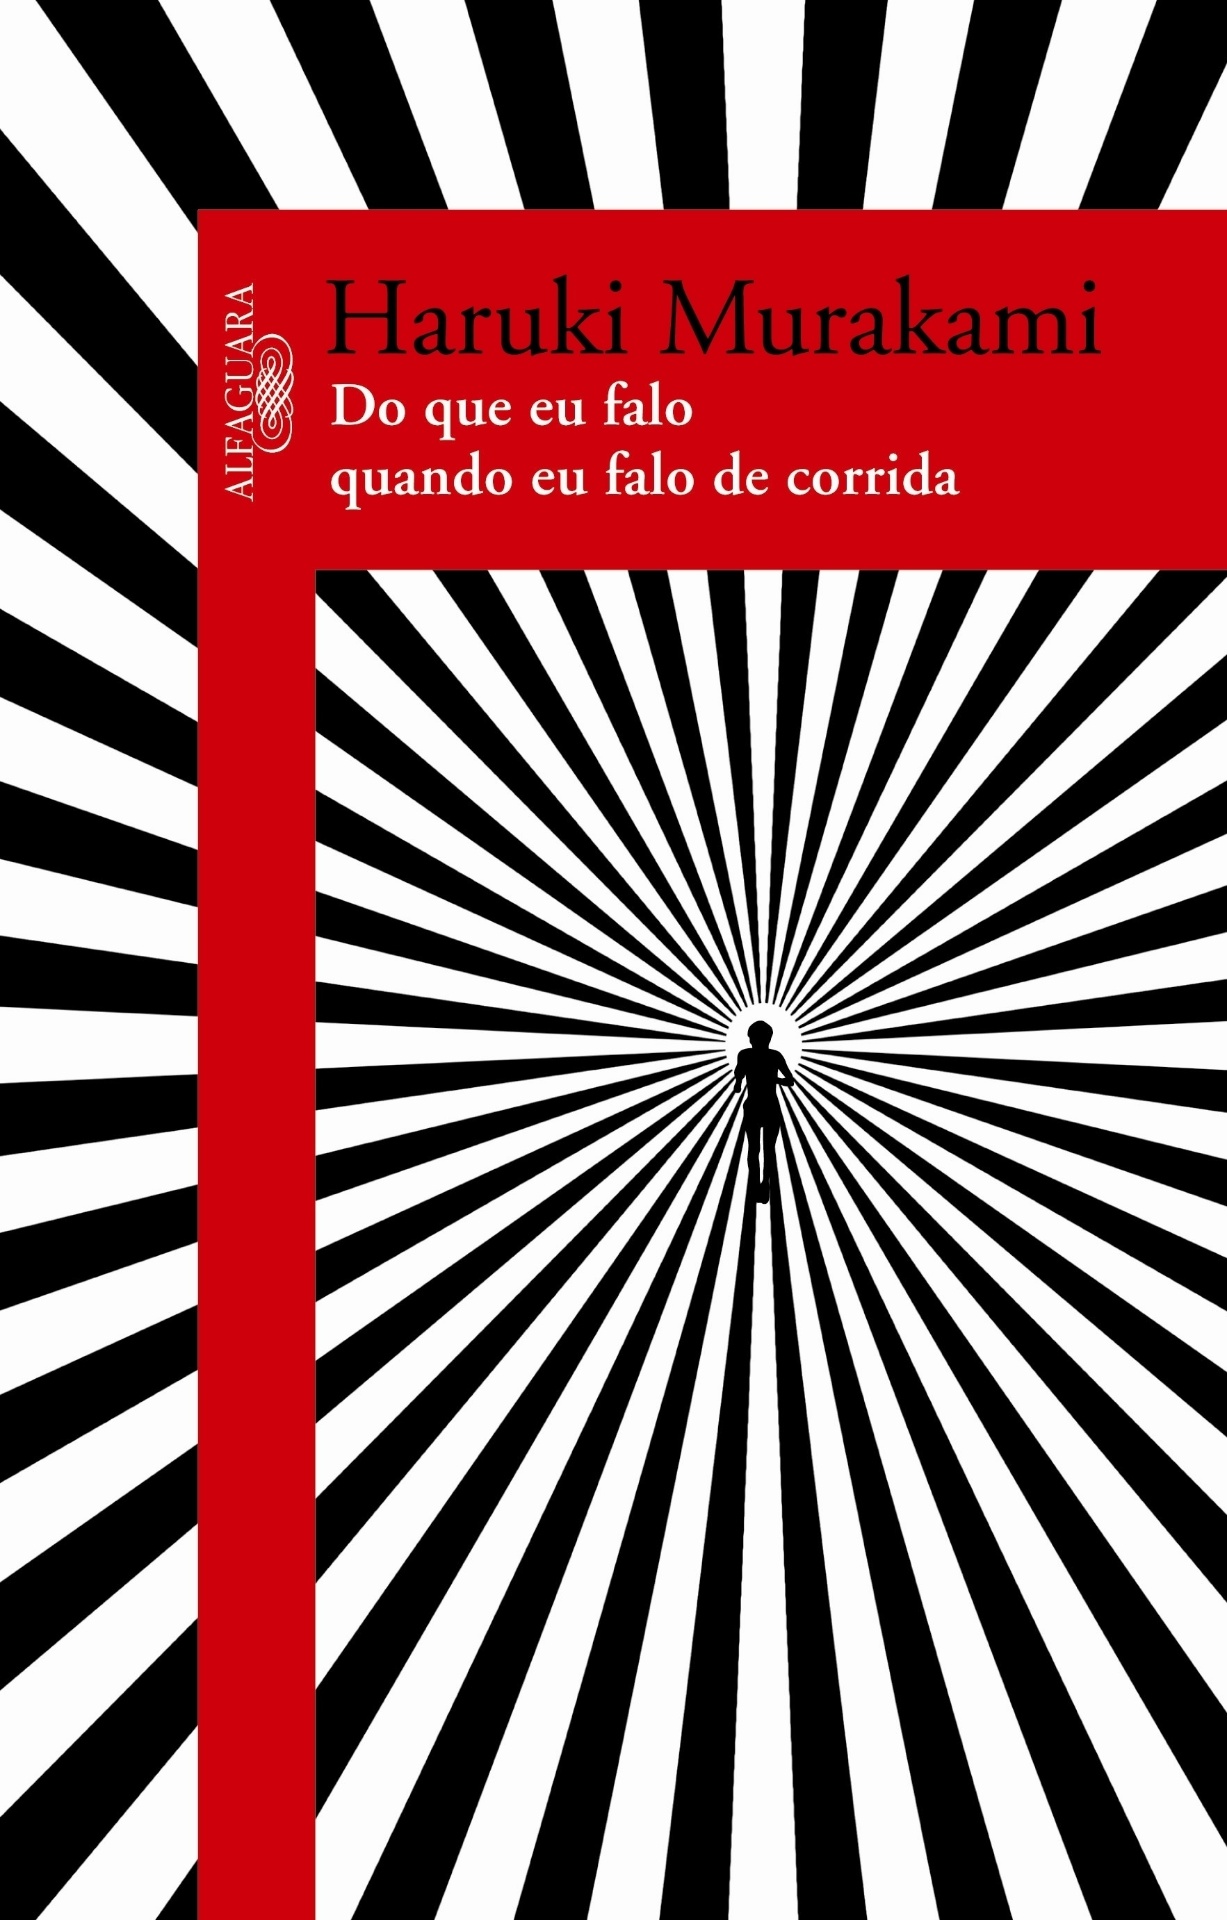 Capa do livro "Do que Eu Falo Quando Falo de Corrida", de Haruki Murakami, lançado no Brasil pela Alfaguara